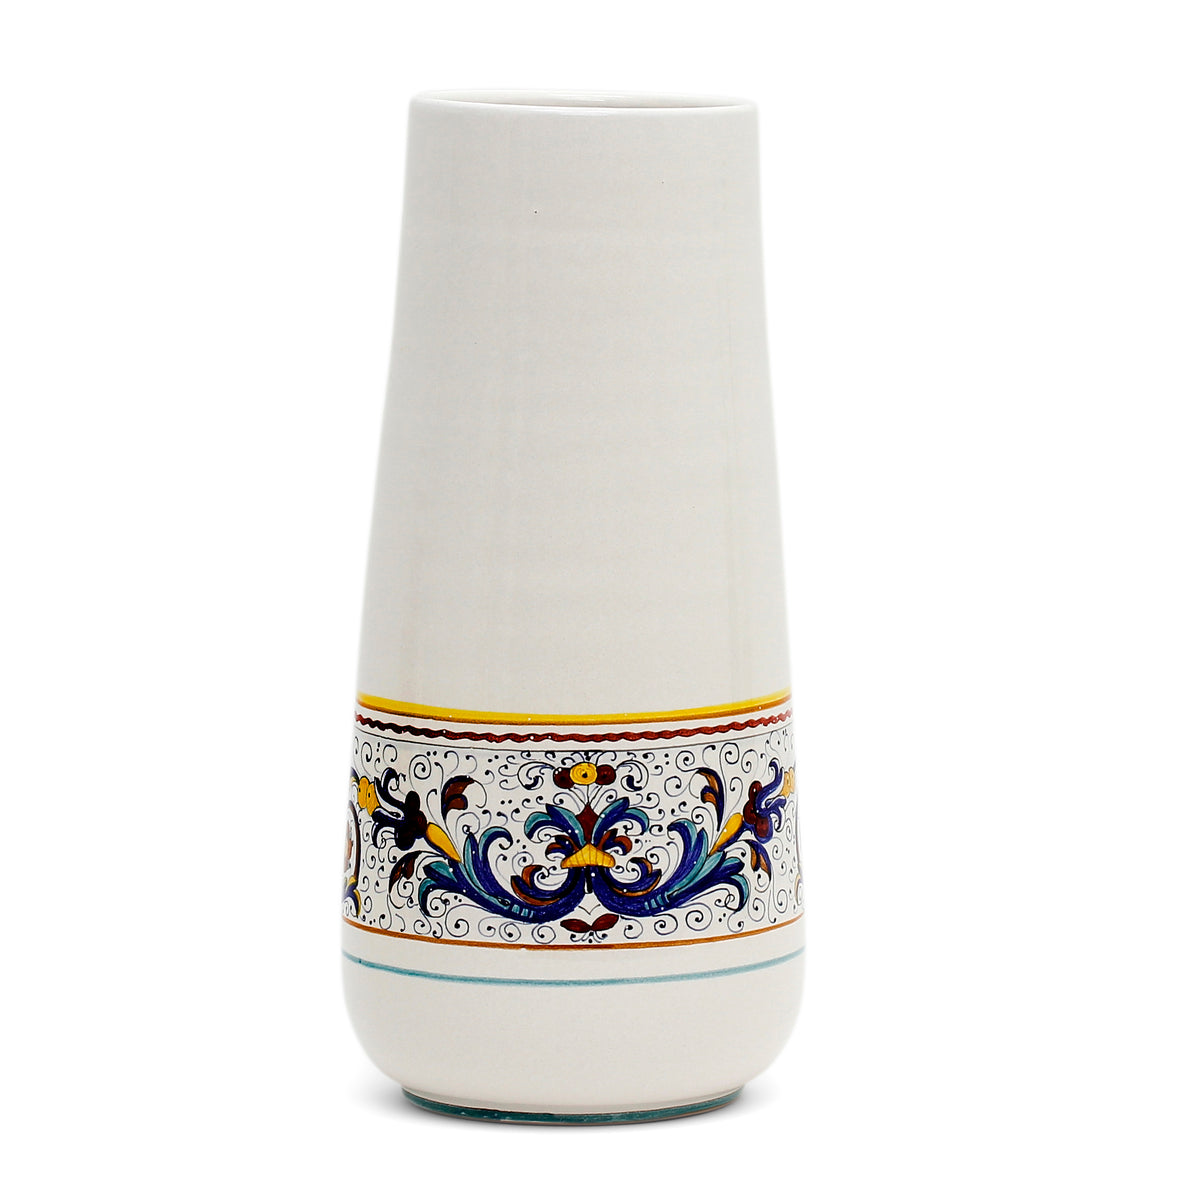 DERUTA BELLA CONICA: Large Conic Vase - RICCO DERUTA Design - Artistica.com